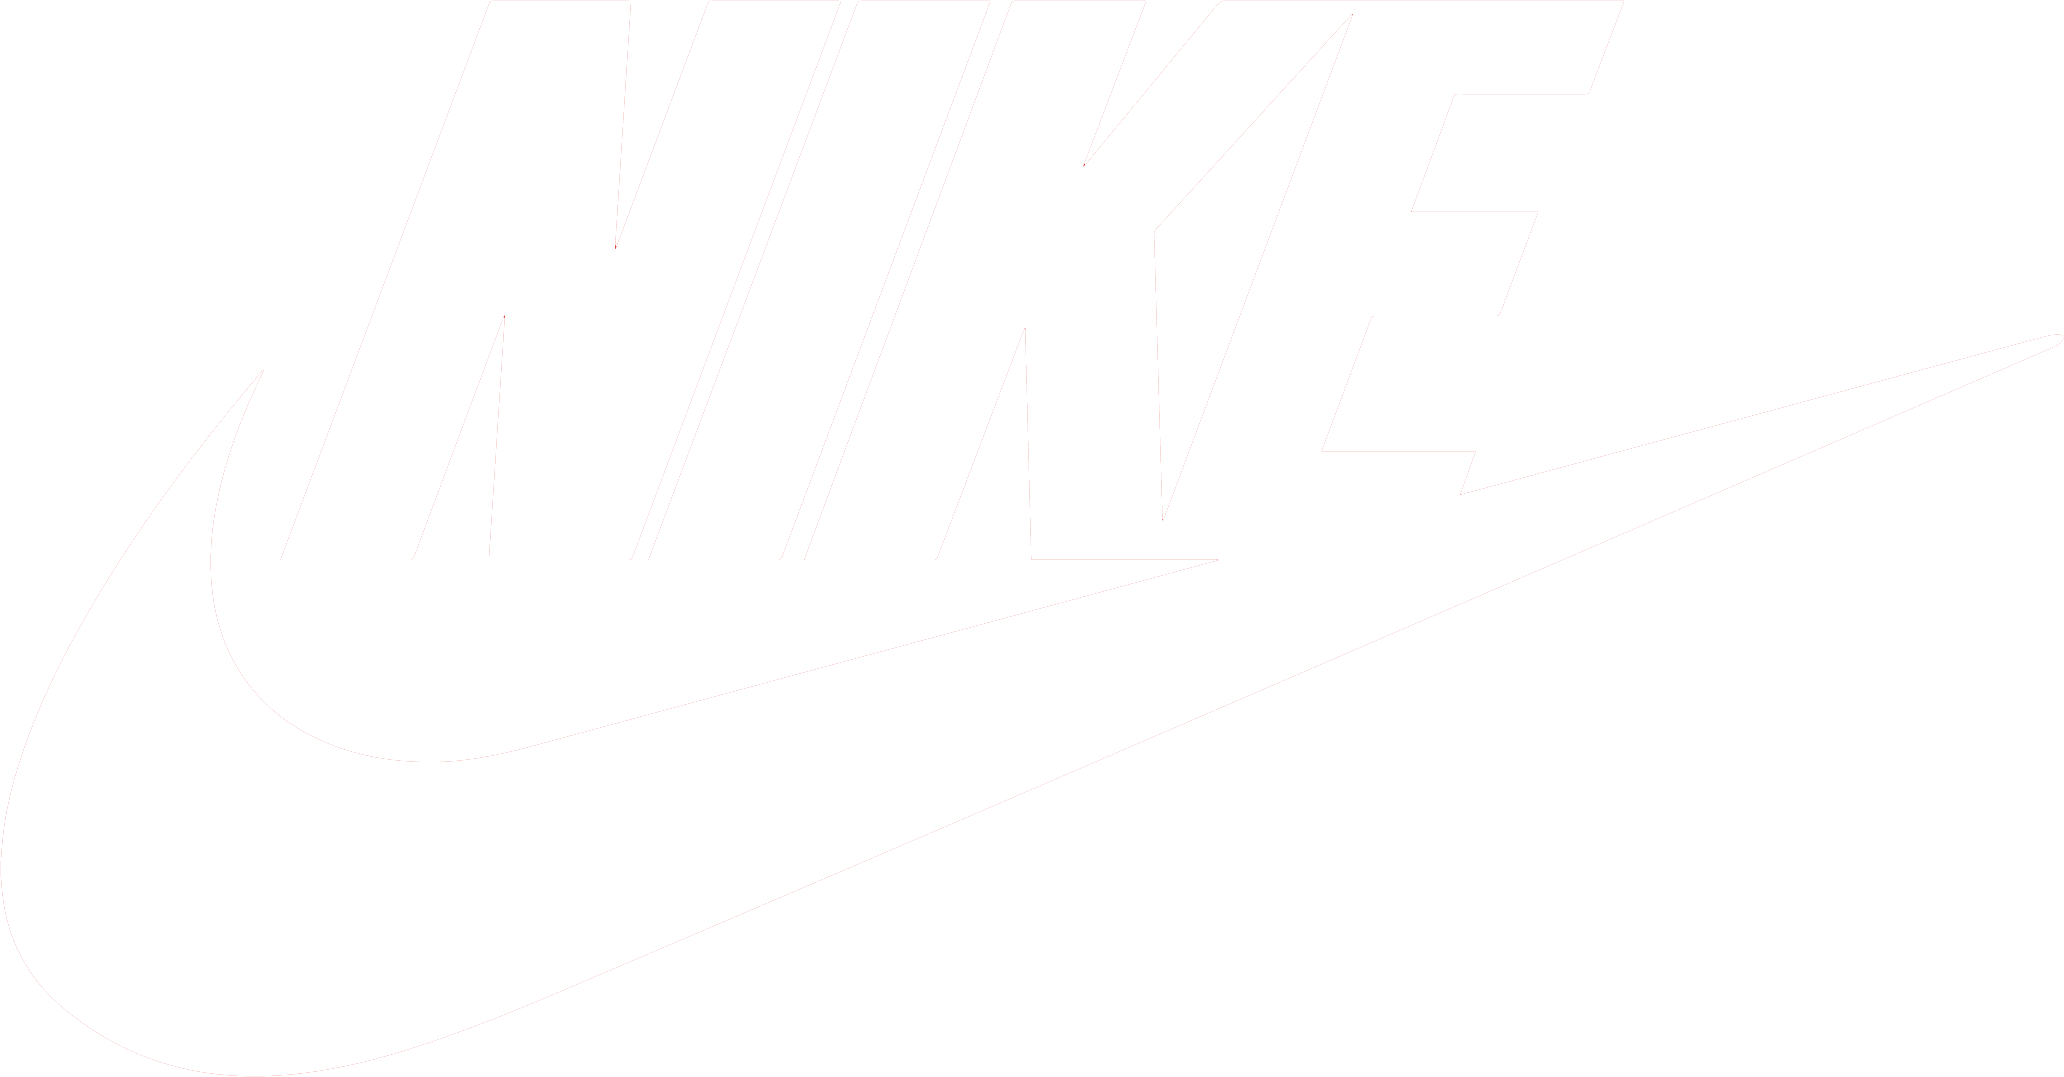 The Nike Logo - Nike Logo PNG Transparent Nike Logo.PNG Images. | PlusPNG